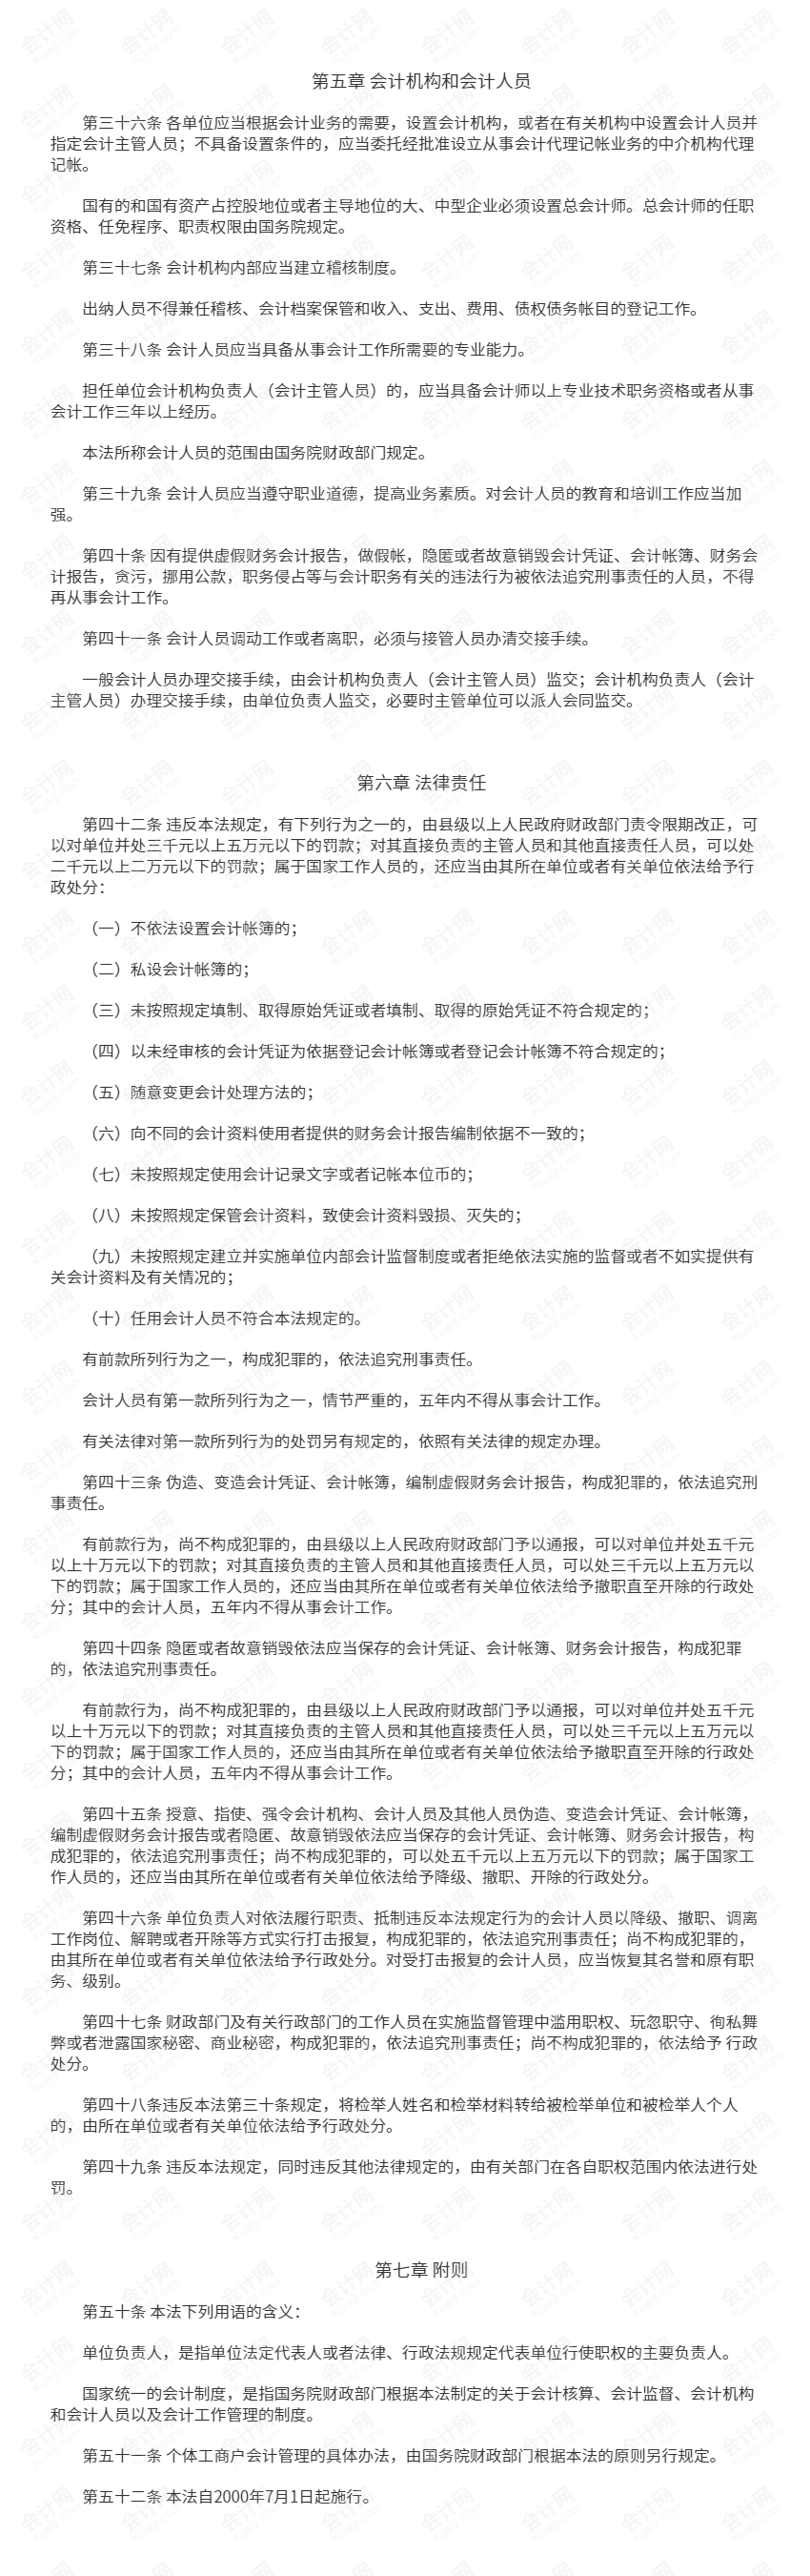 中华人民共和国会计法(2017修正) 下.png